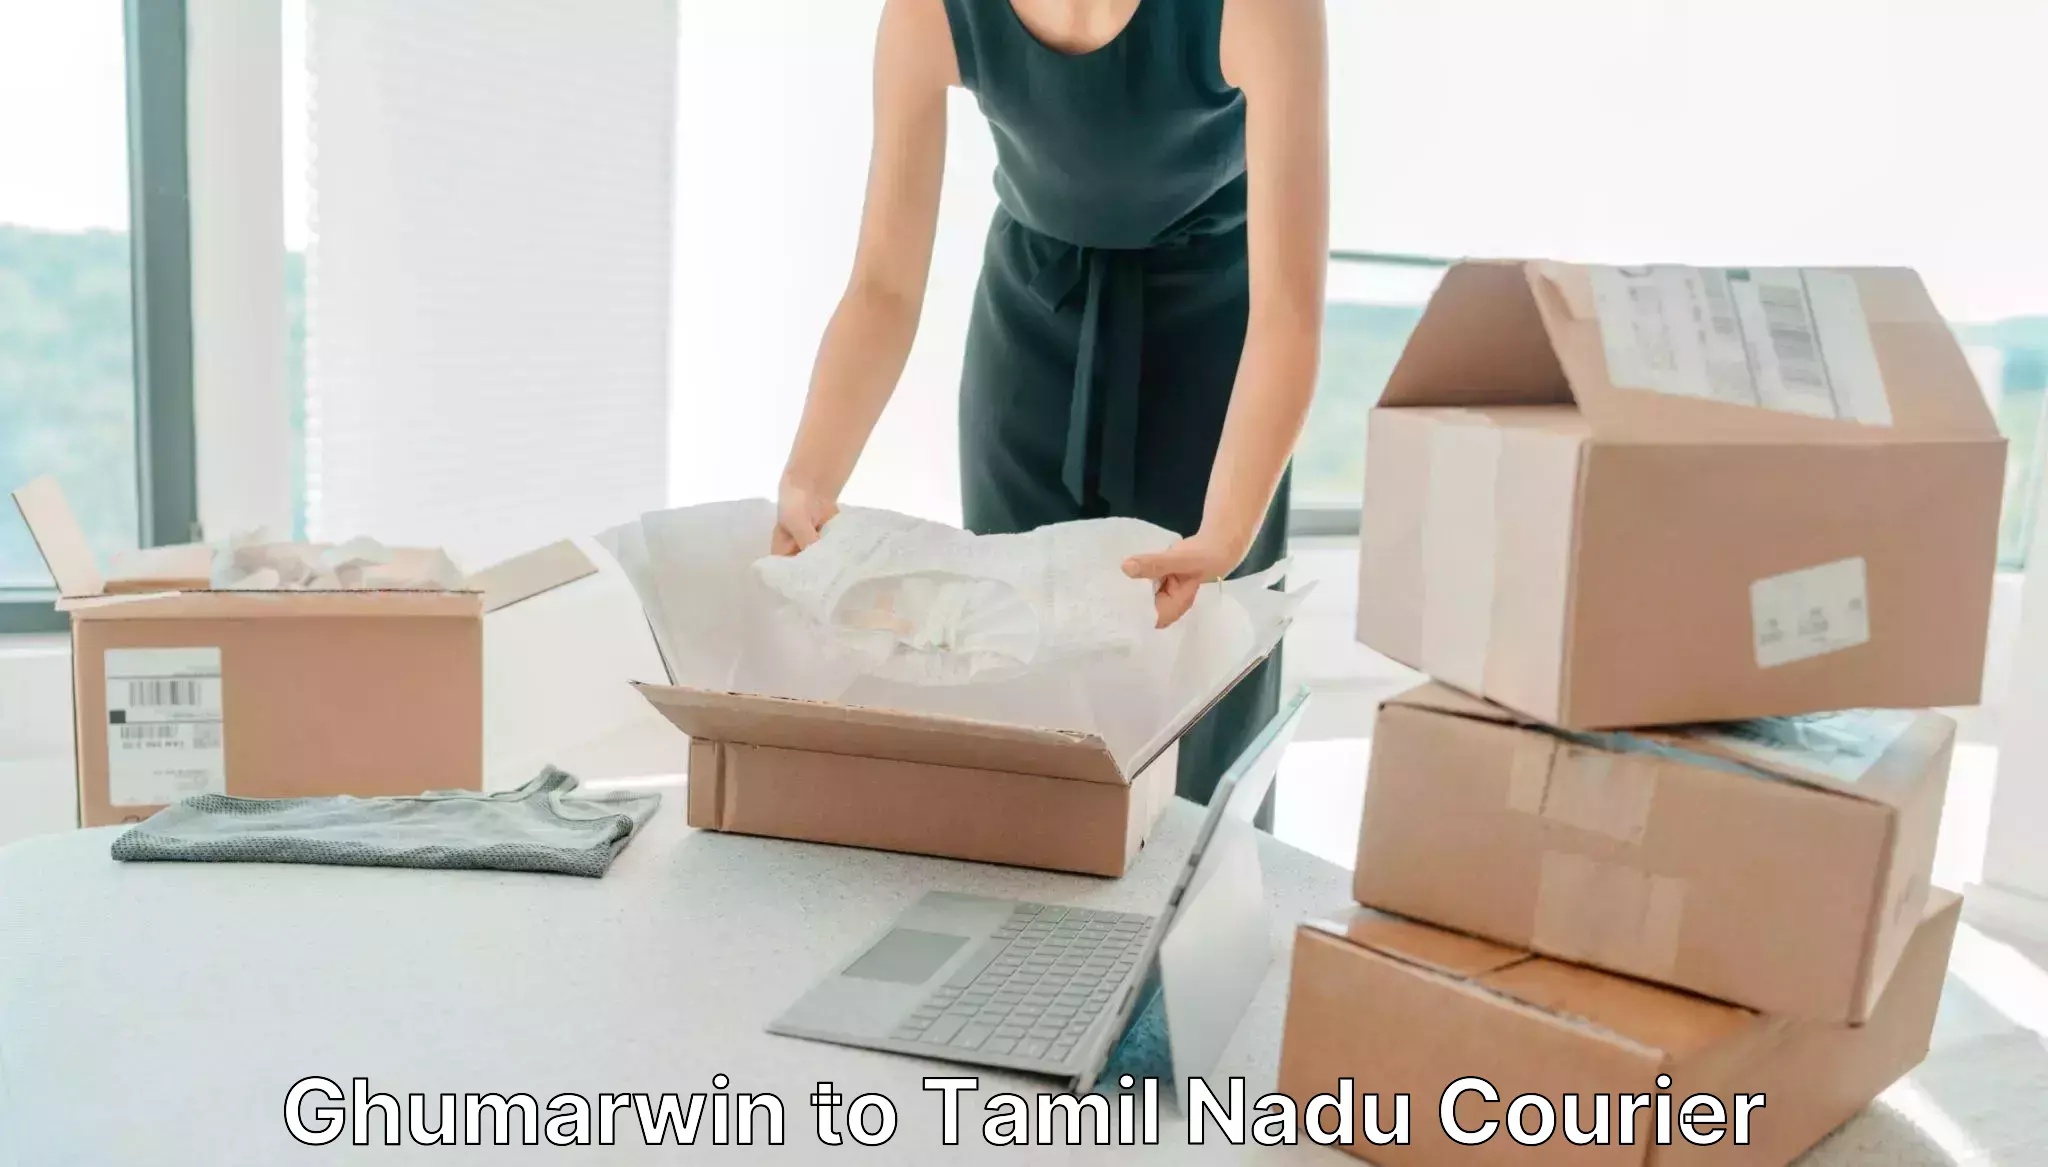 Express logistics providers Ghumarwin to Tamil Nadu